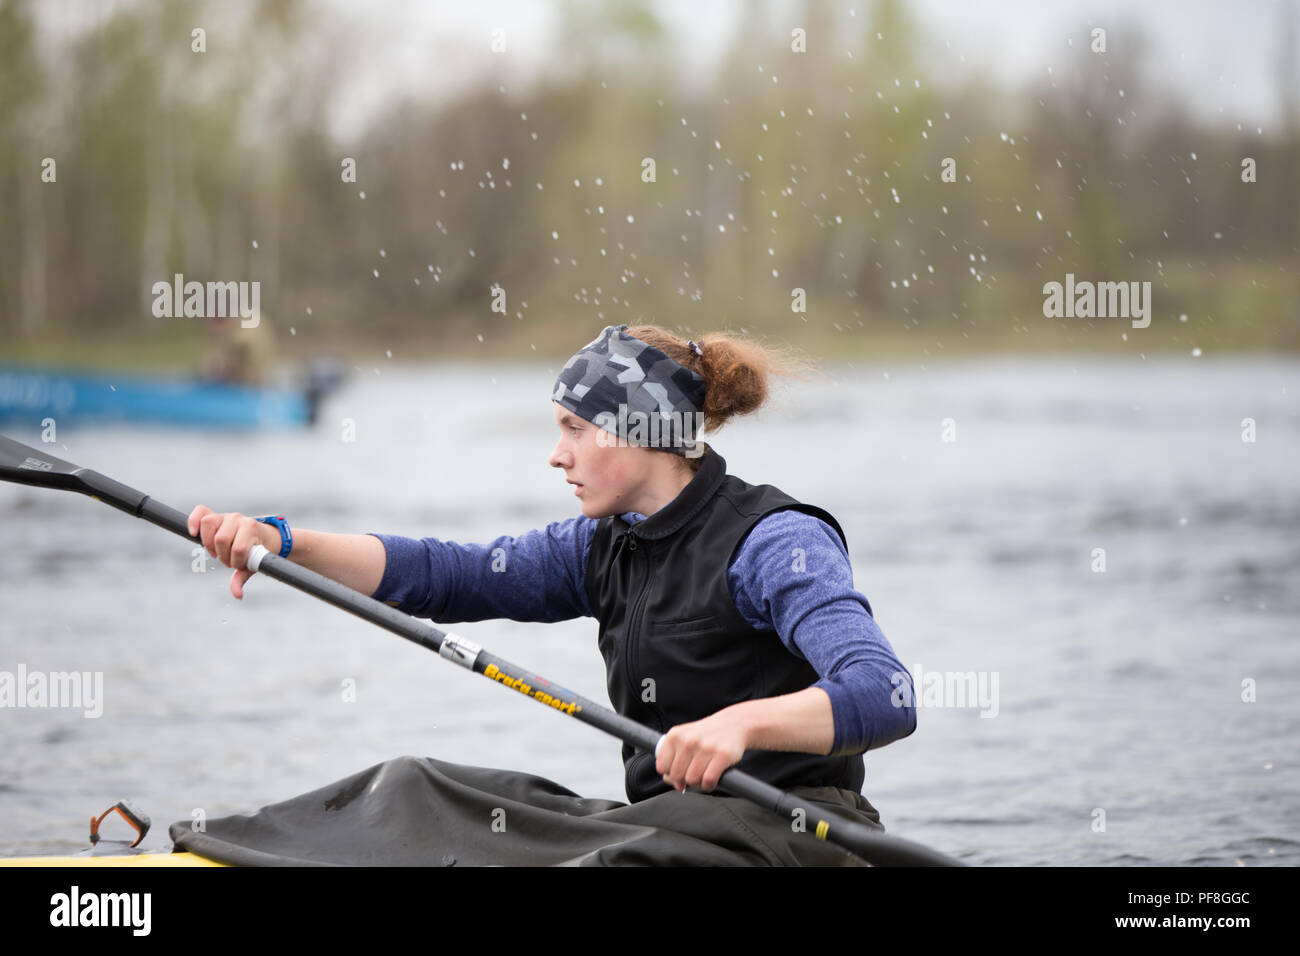 Biélorussie, Minsk, 25 avril 2018. La formation dans l'aviron. Femme athlète engagé dans l'aviron.Girl in a sports voile à la rame Banque D'Images